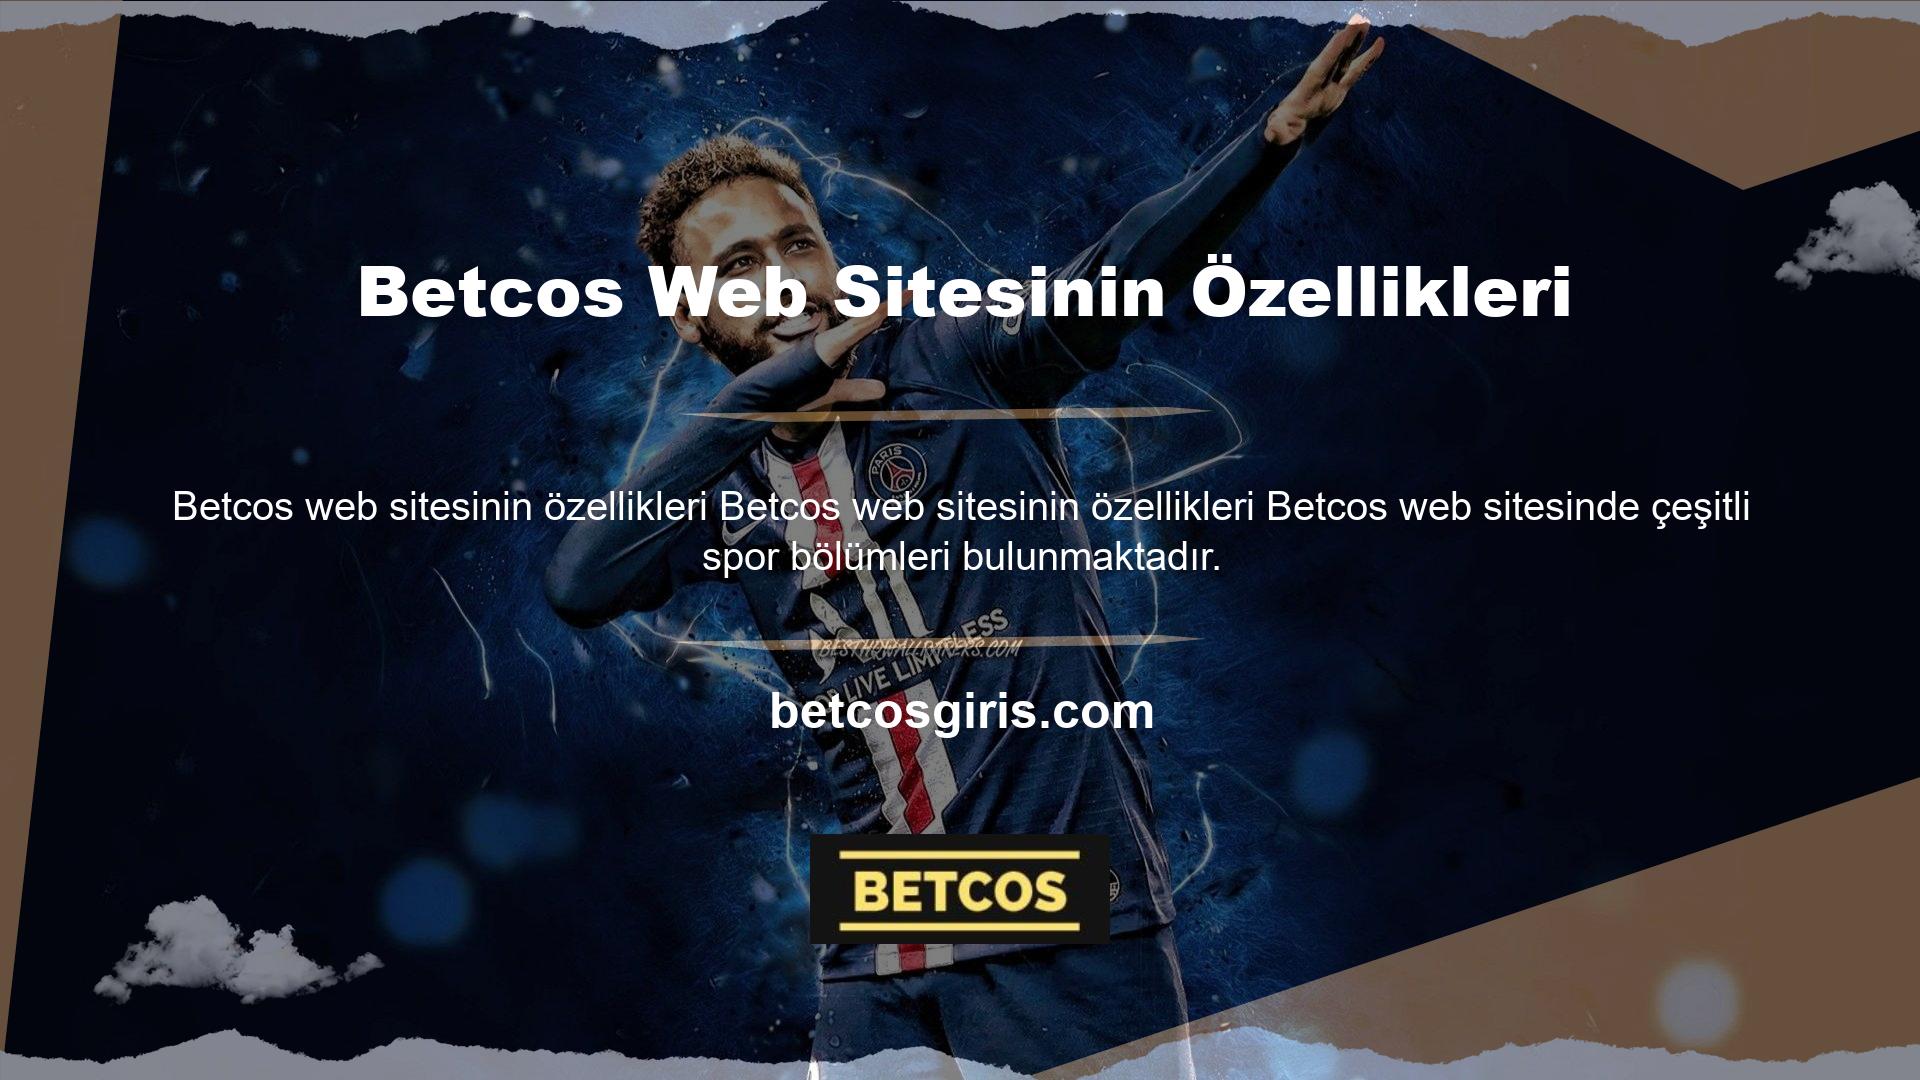 Betcos sitesi yazının başında da belirttiğimiz gibi spor tahmin bölümü bulunan bir sitedir